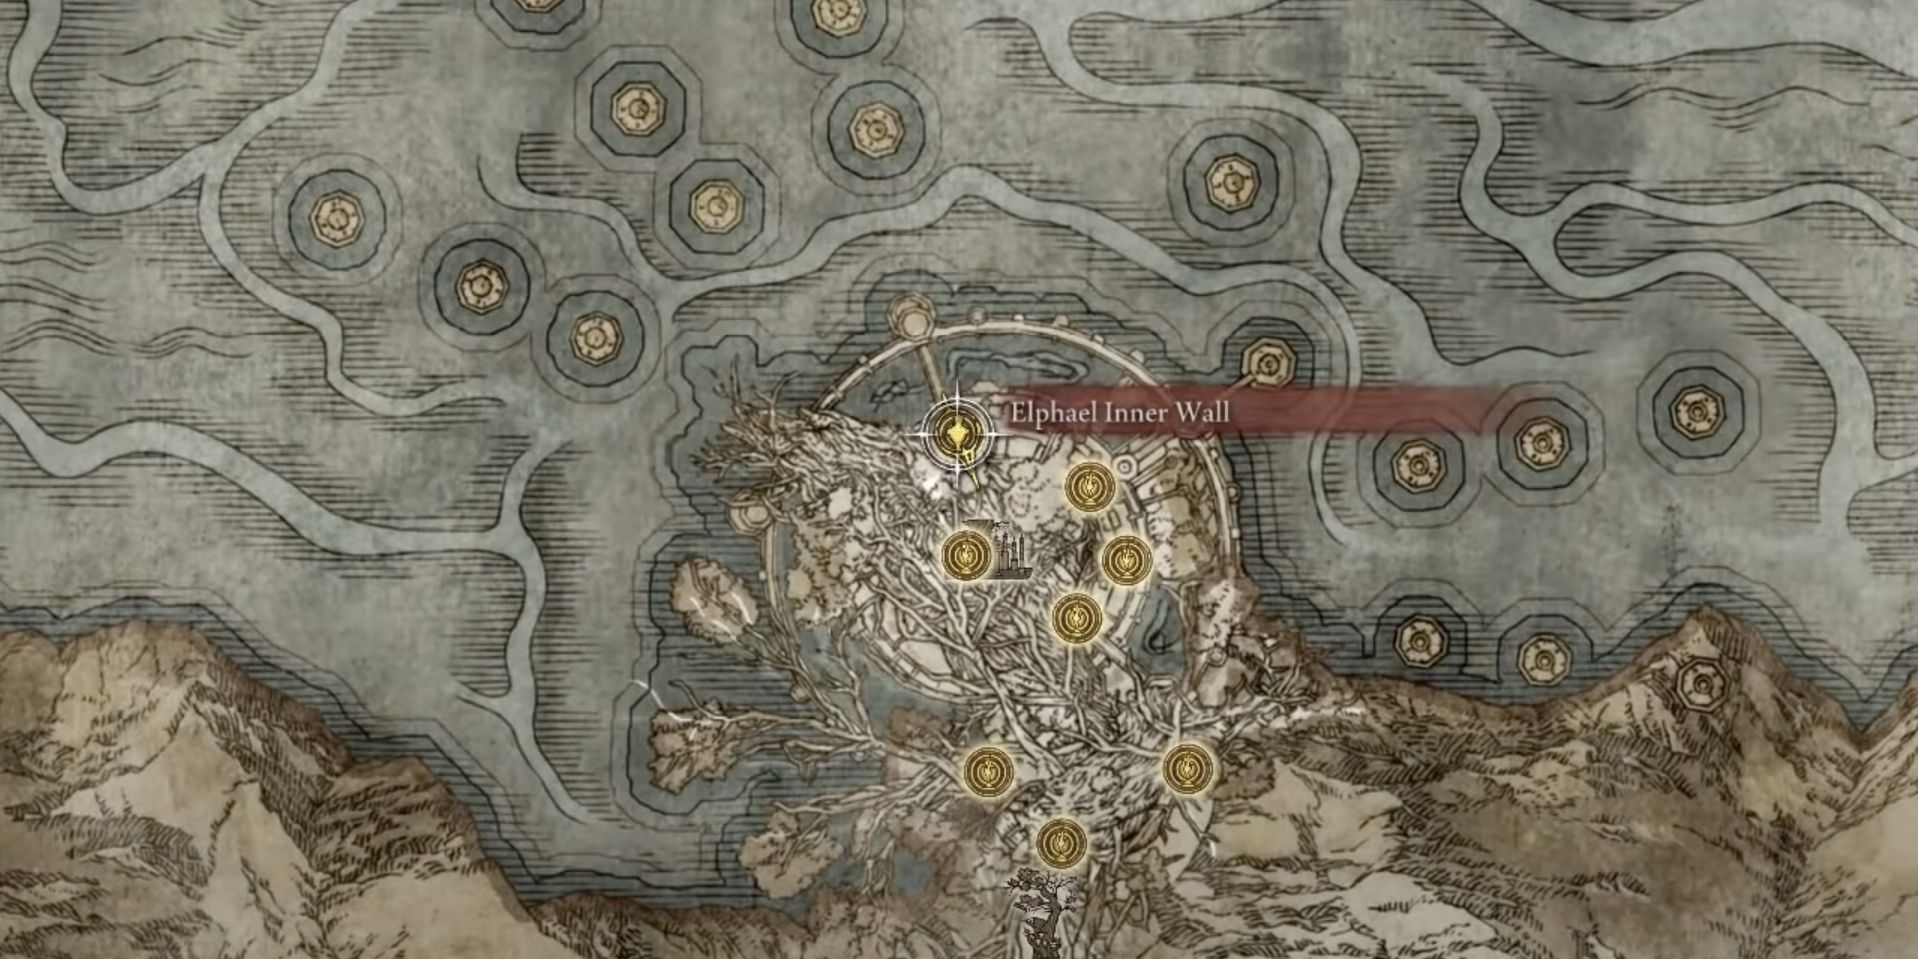 Elpahel Inner Wall map in Elden Ring